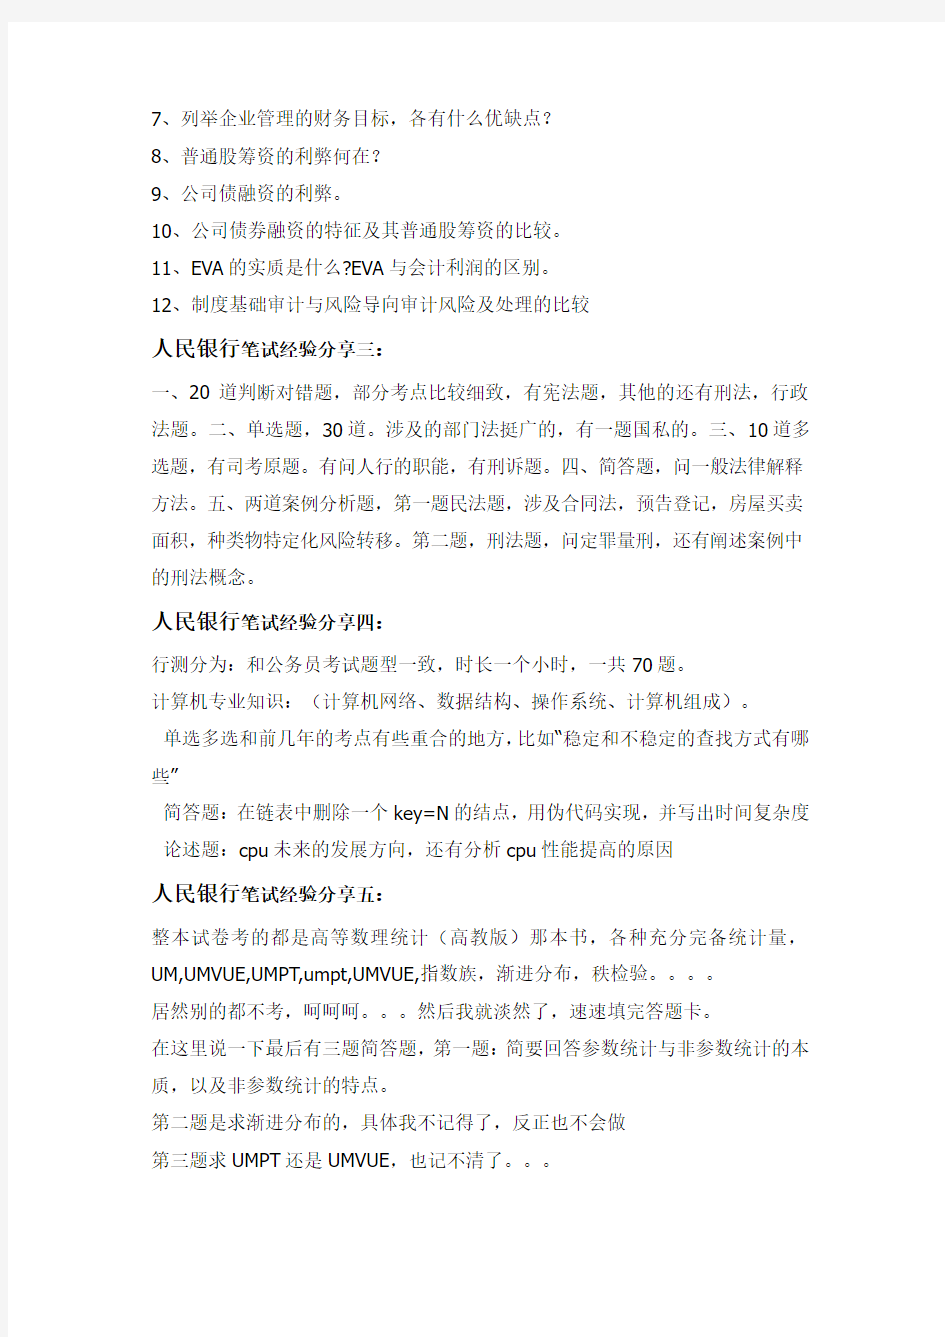 中国人民银行分支机构全国统一考试真题库笔试真题及复习资料解析